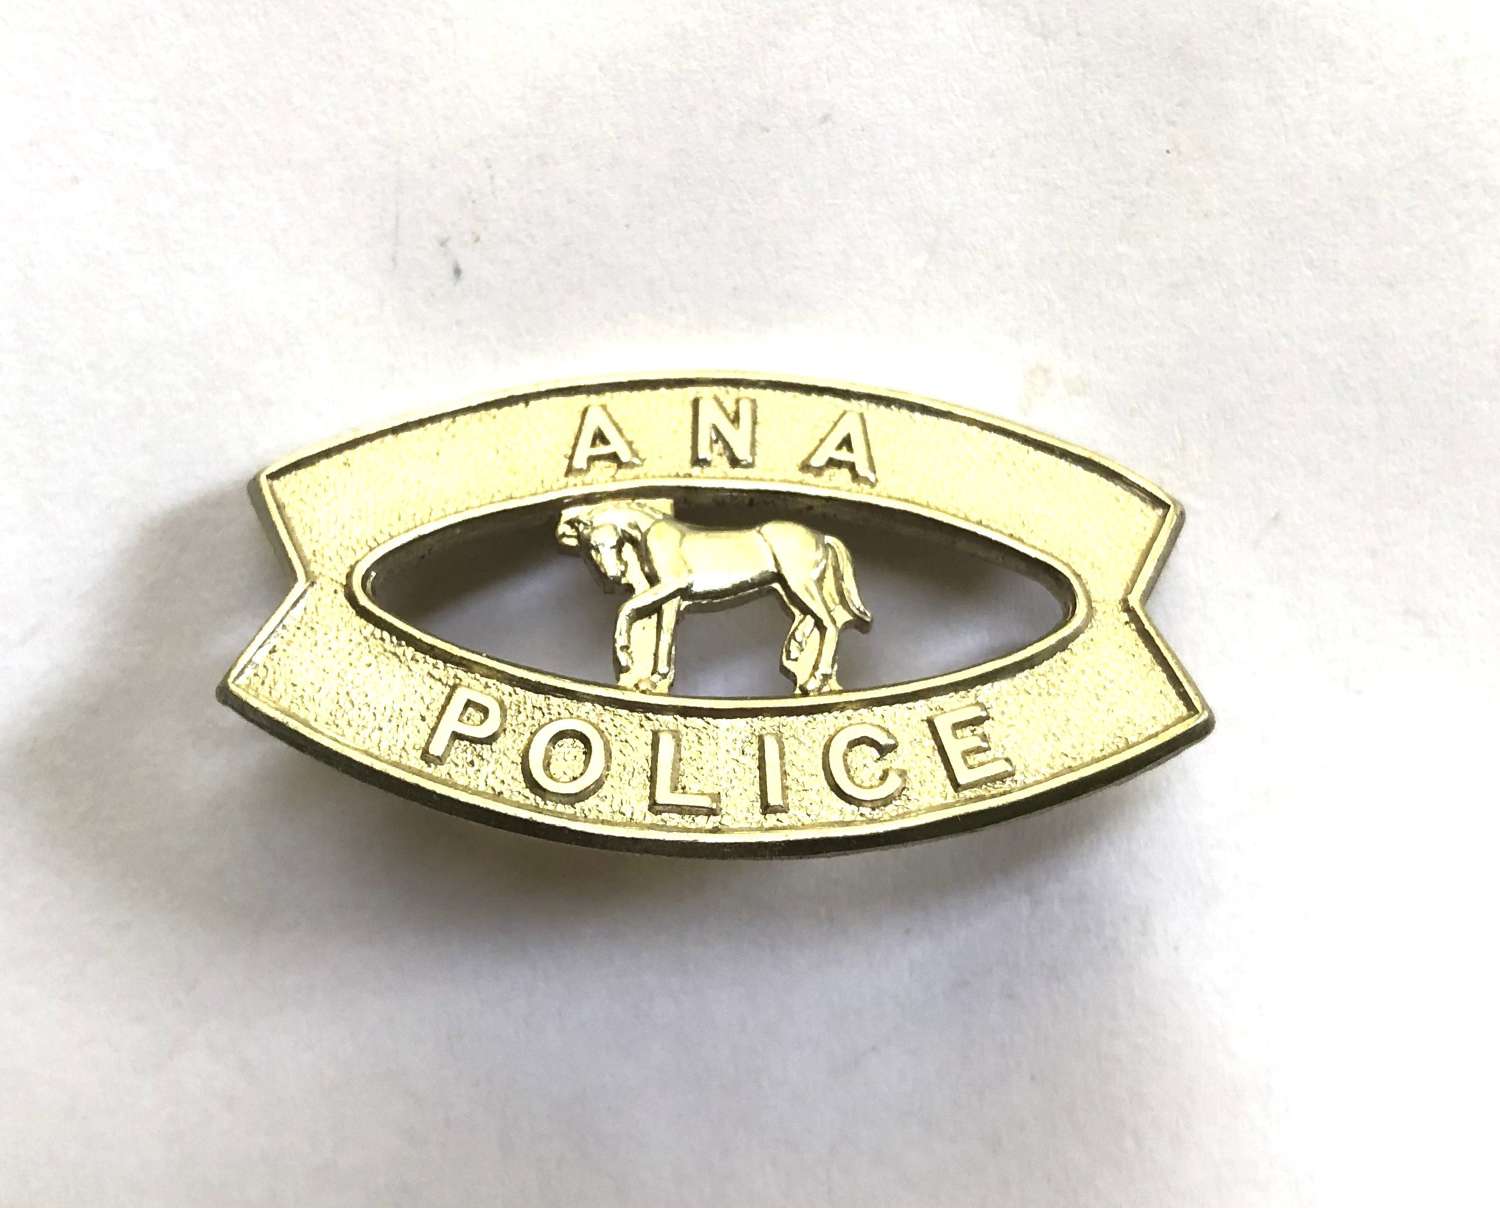 Uganda Ana Province Police badge